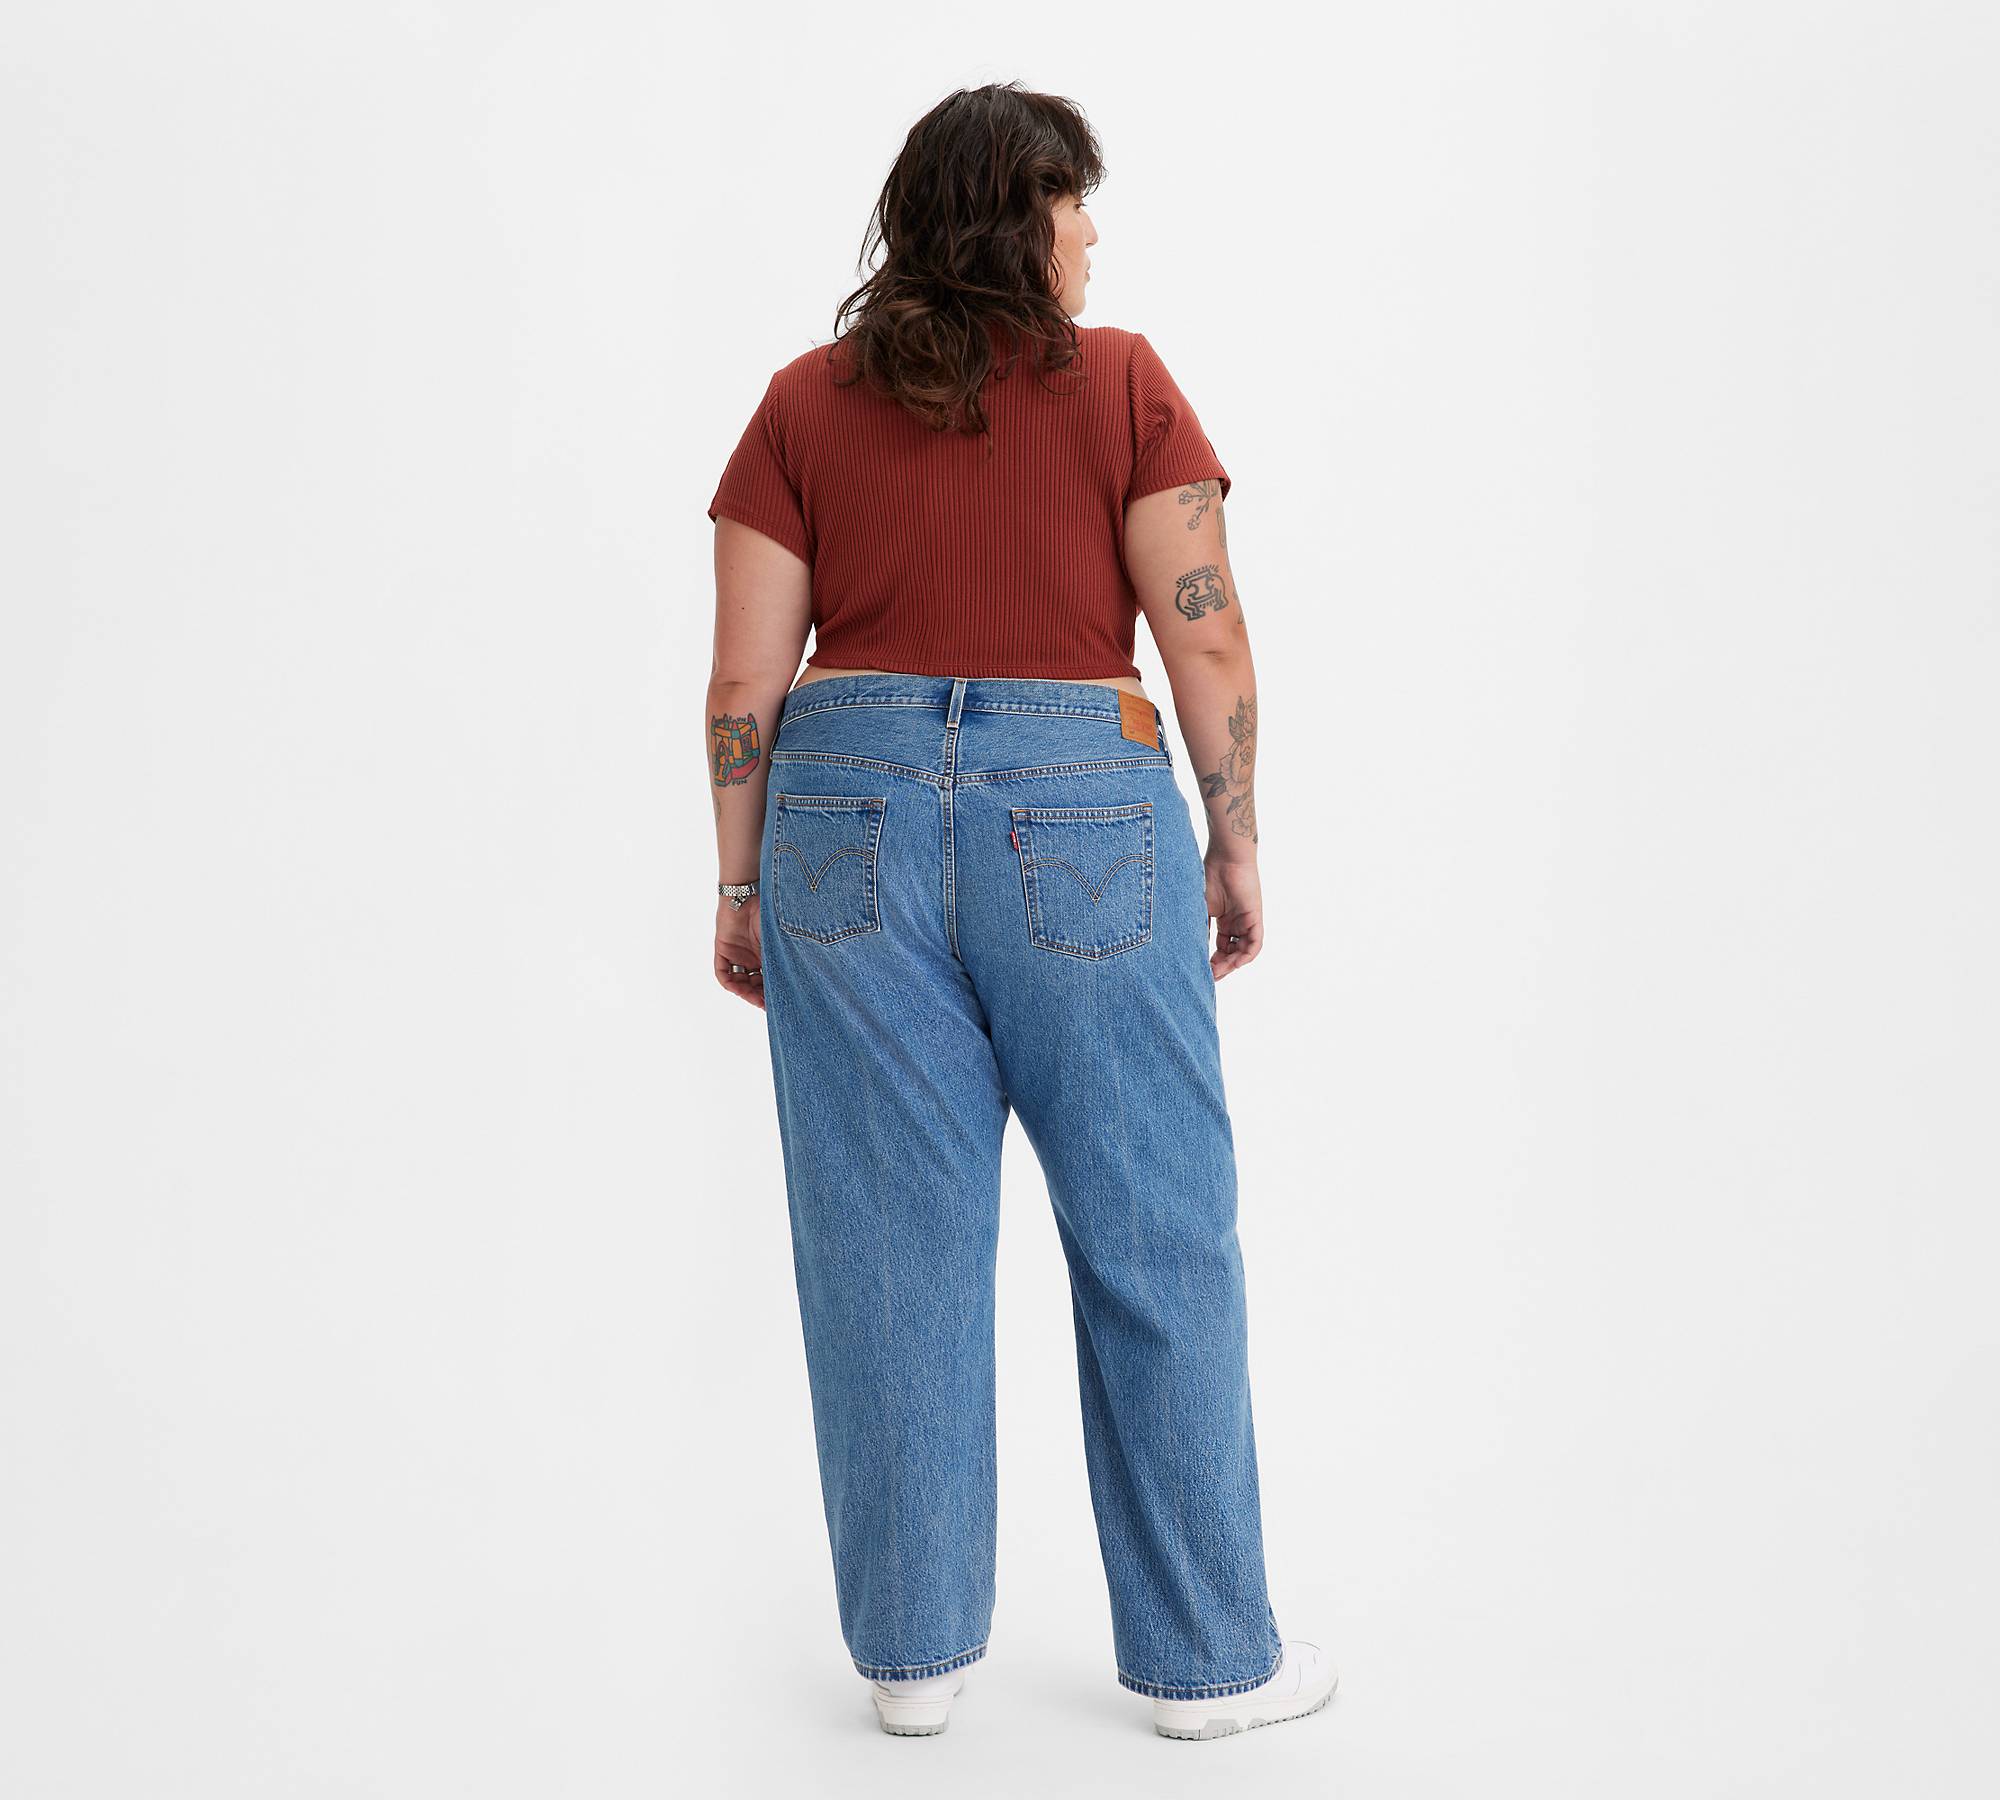 501® '90s Women's Jeans (plus Size) - Black